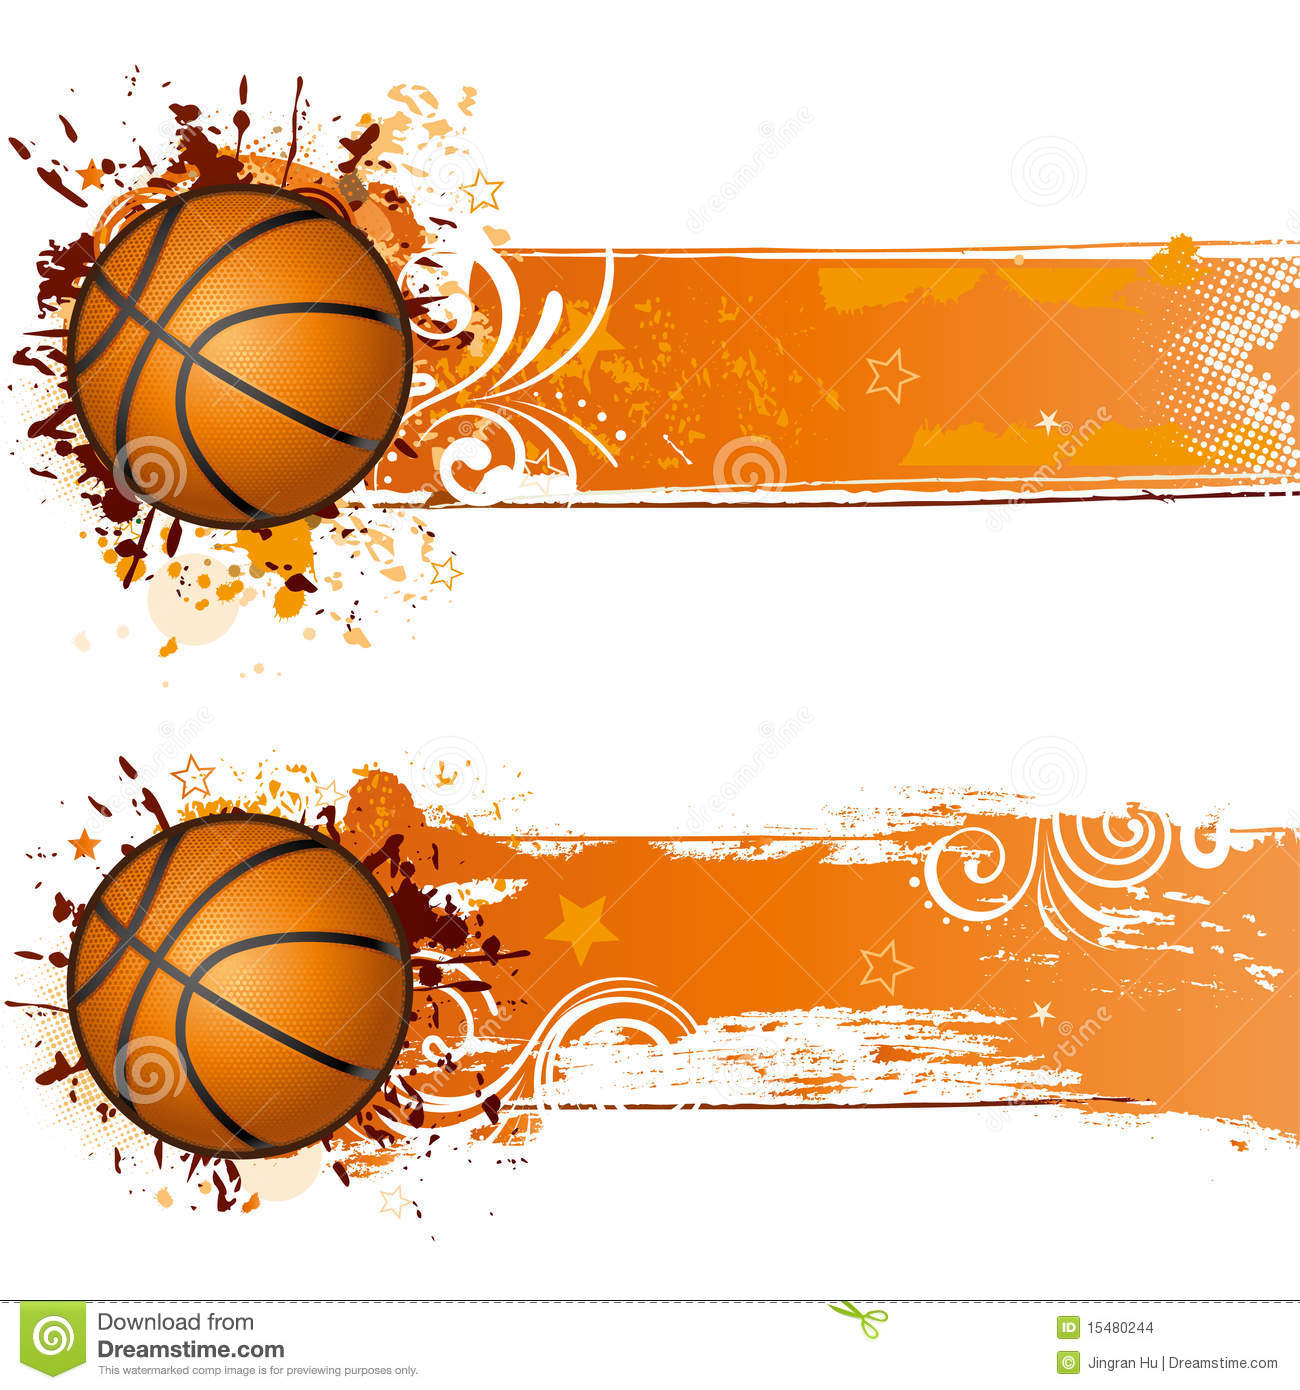 Basketball Border Clip Art Cl